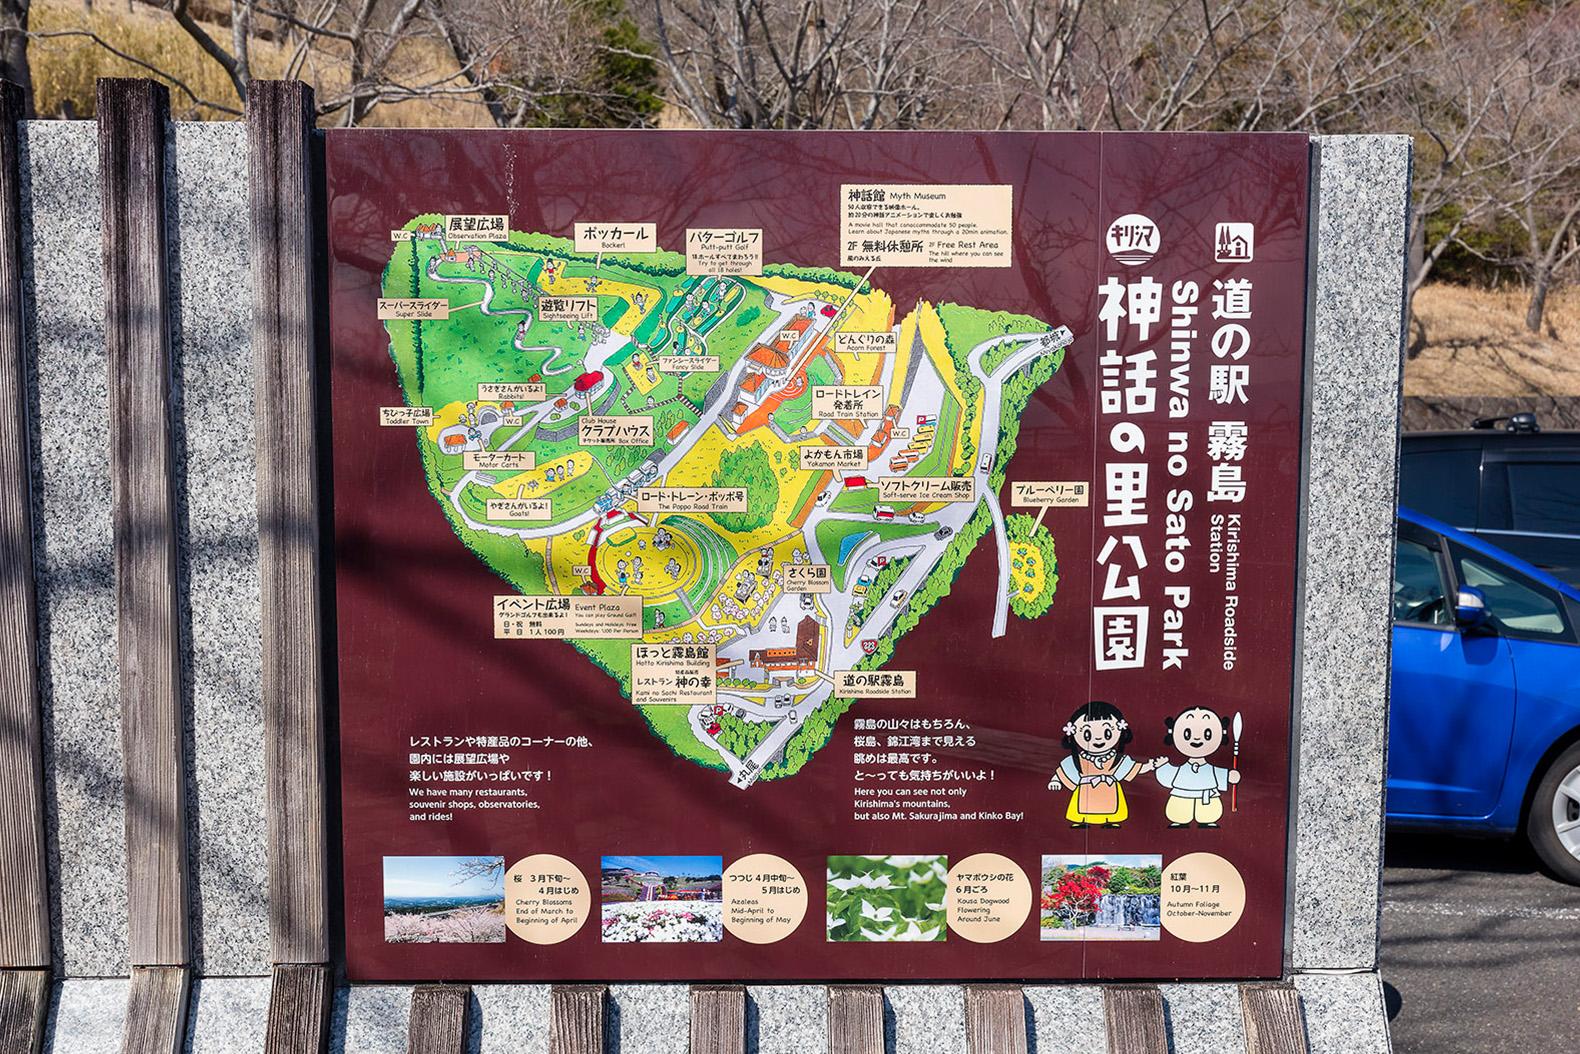 기리시마 신화의 마을 공원 (미치노에키 기리시마)-5